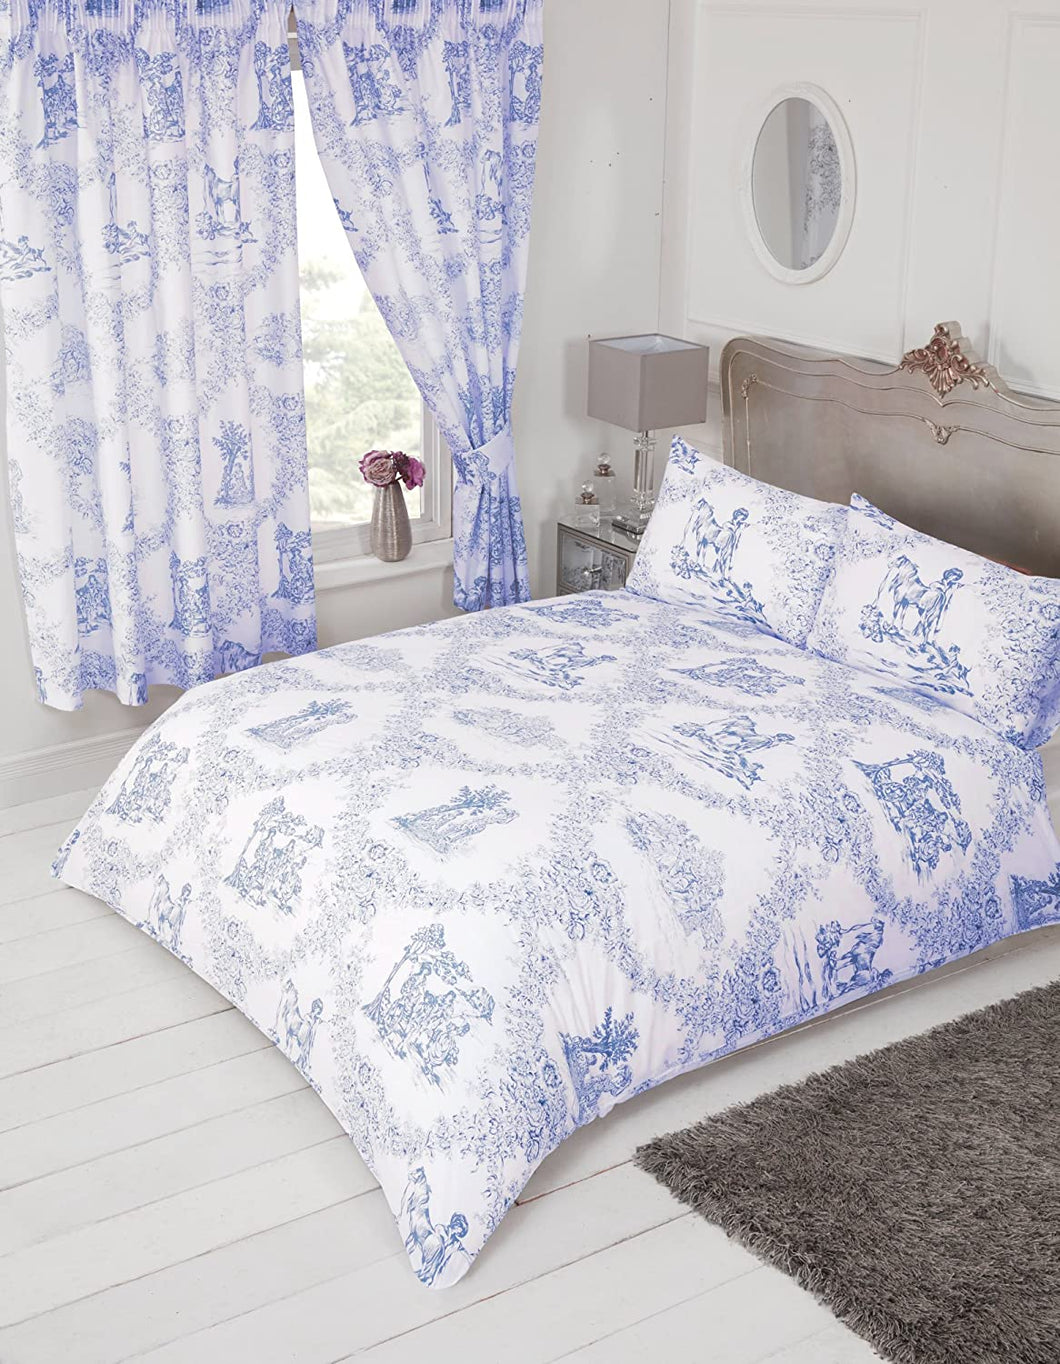 Double Bed Duvet Cover Set Toile De Jouy Blue